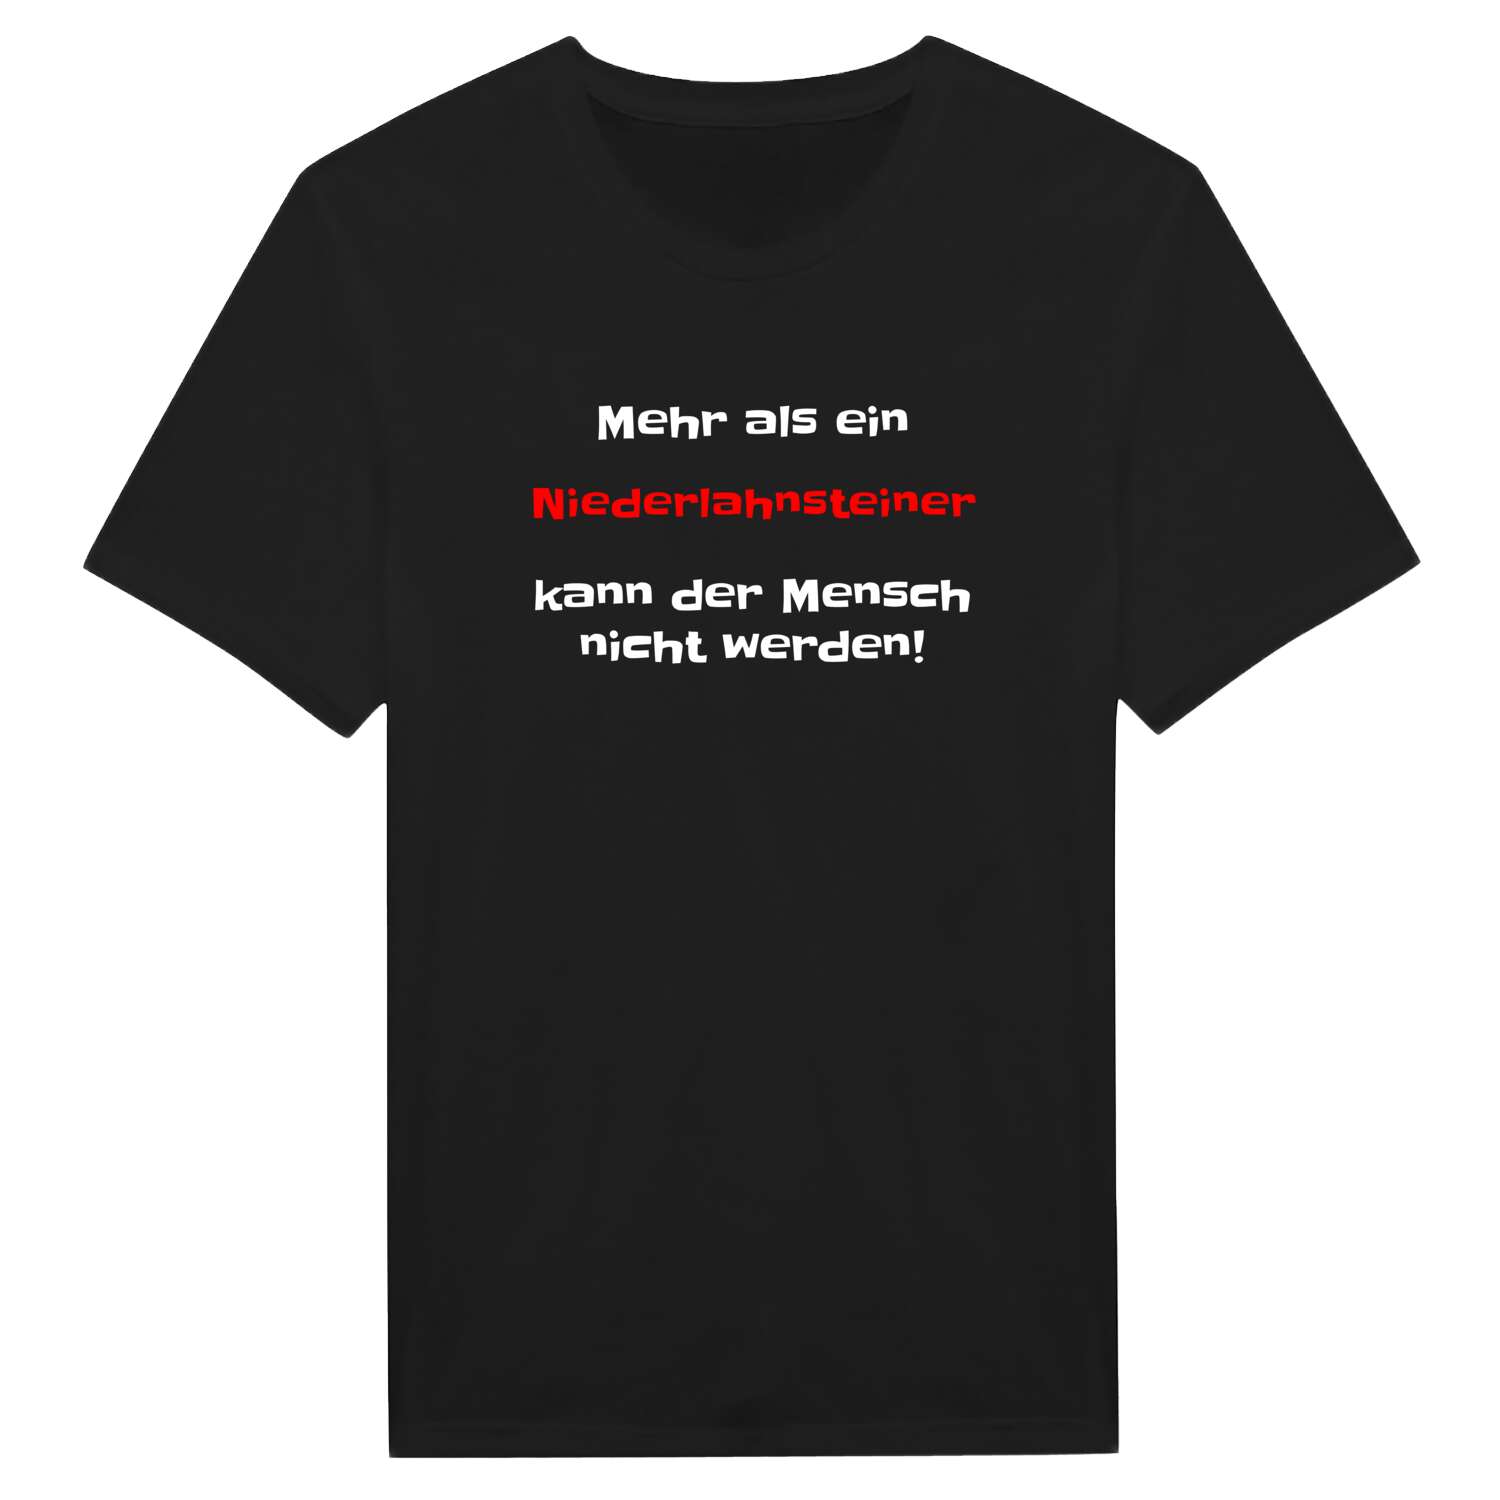 Niederlahnstein T-Shirt »Mehr als ein«